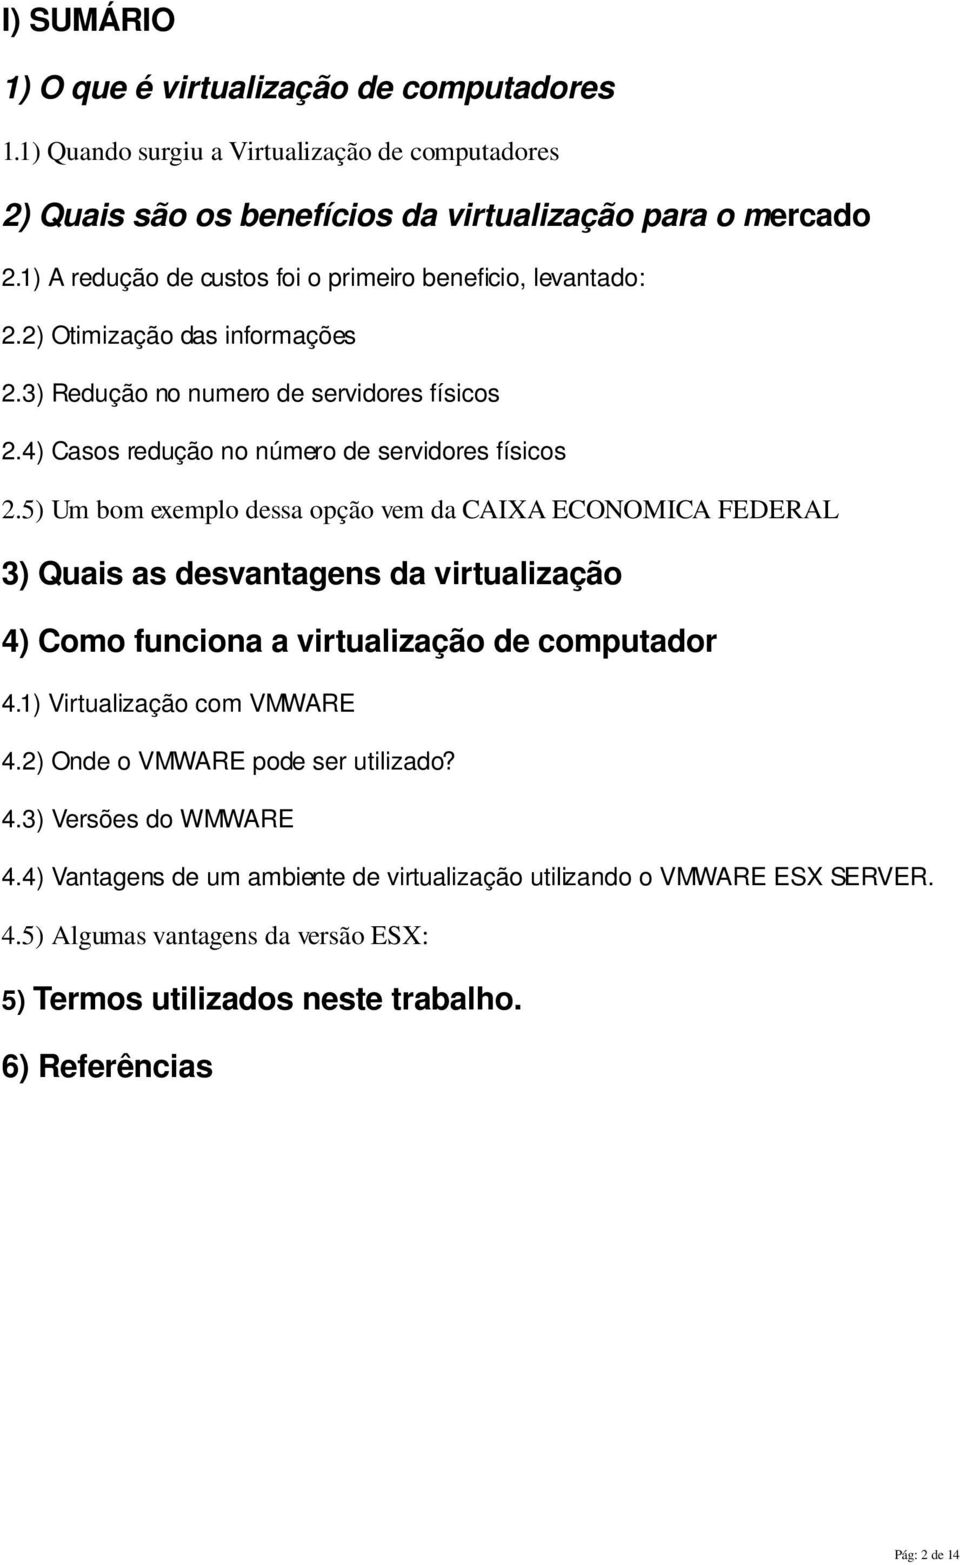 5) Um bom exemplo dessa opção vem da CAIXA ECONOMICA FEDERAL 3) Quais as desvantagens da virtualização 4) Como funciona a virtualização de computador 4.1) Virtualização com VMWARE 4.